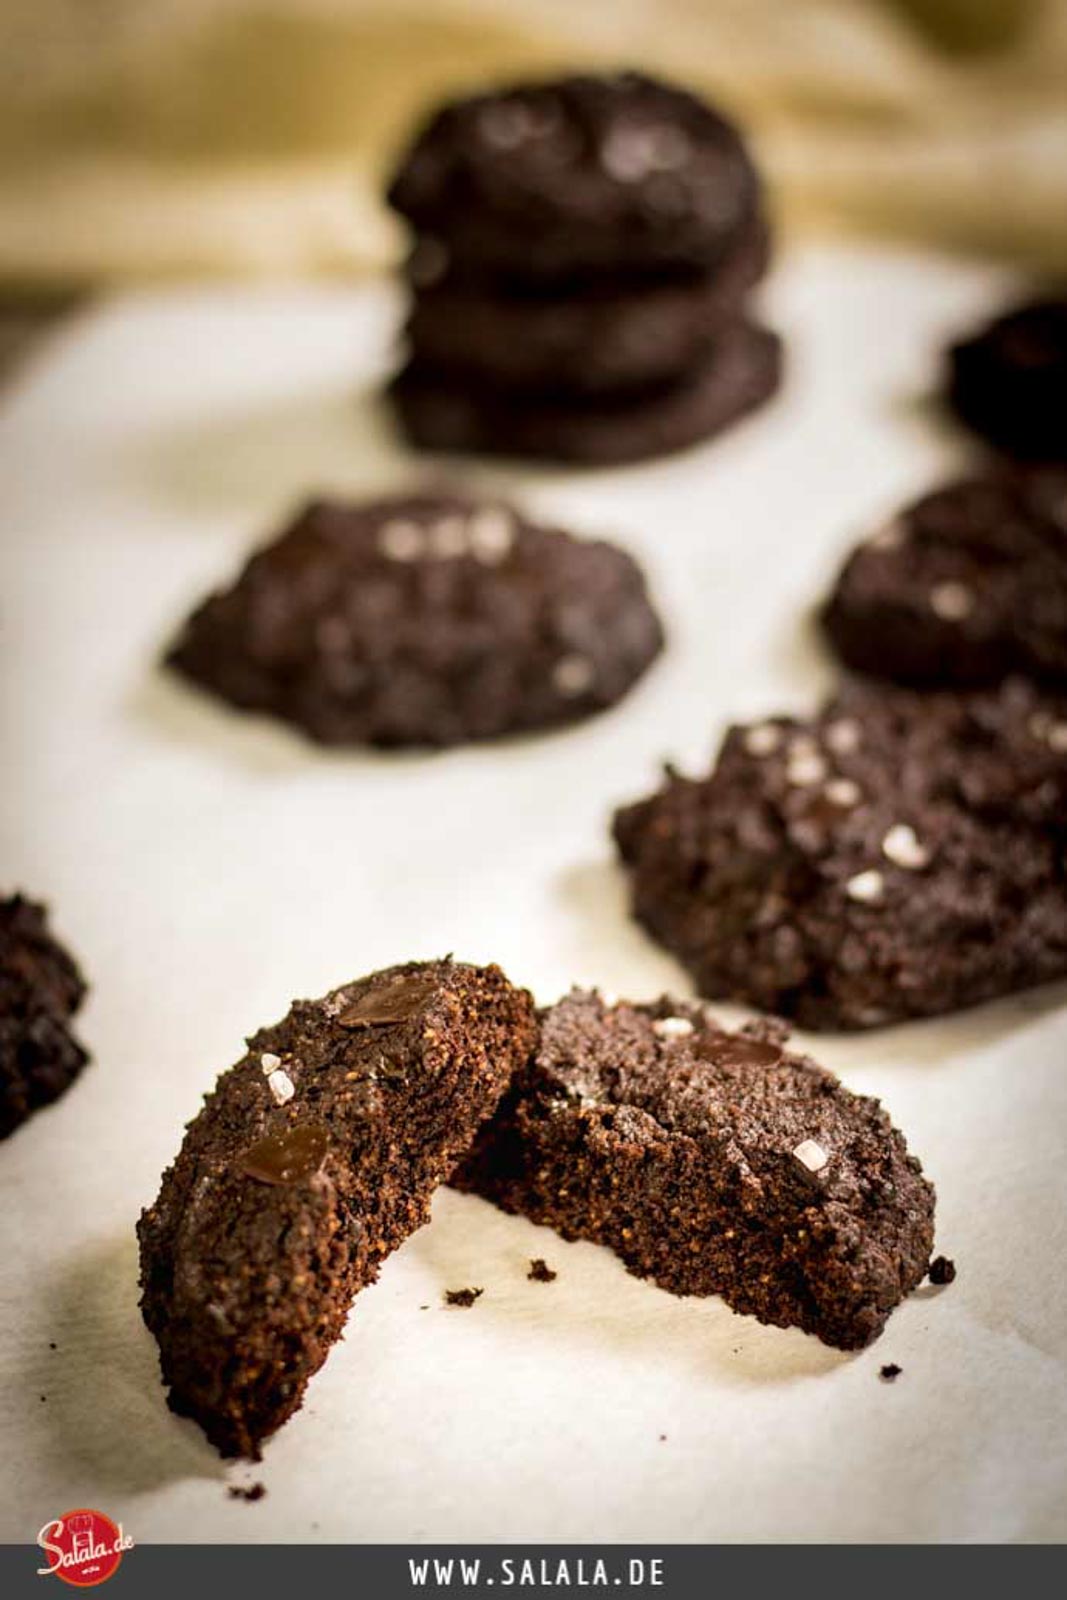 Keto Chocolate Cookies by salala.de Rezept Low Carb und glutenfrei ohne Mehl und Zucker mit dunkler Schokolade 4